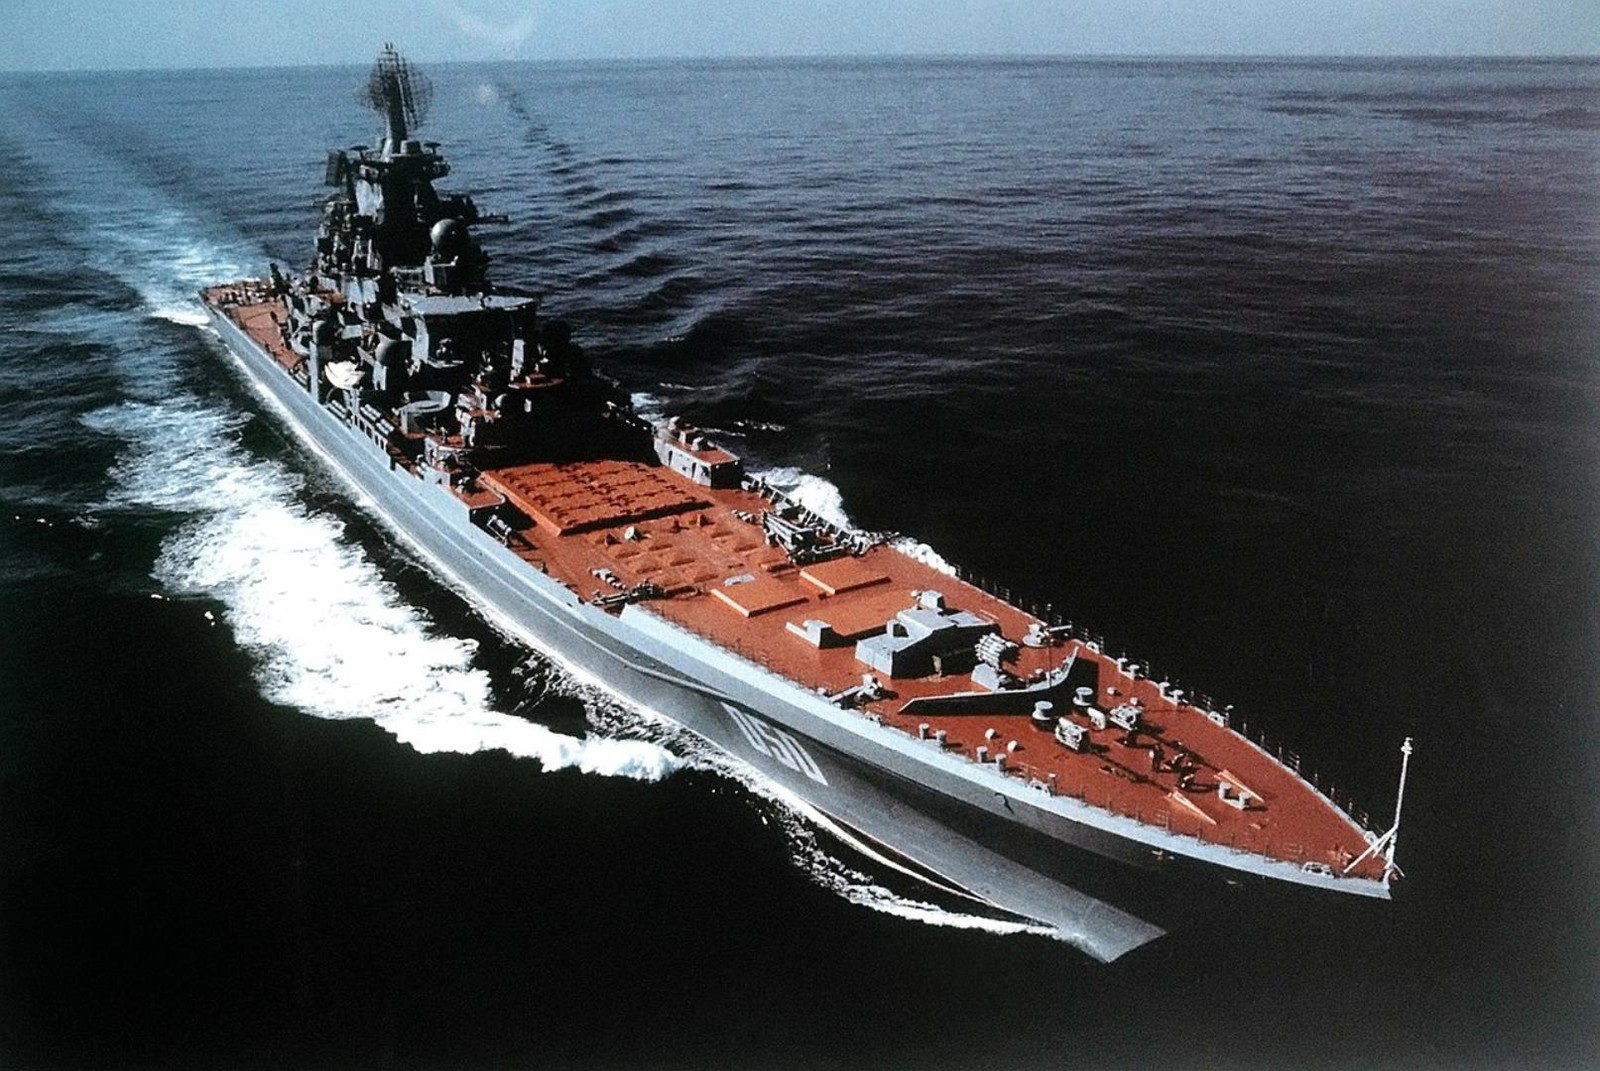 Wróg nr 1. Jeśli Rosja uzbroi swój krążownik w ten sposób, jego zniszczenie będzie priorytetem